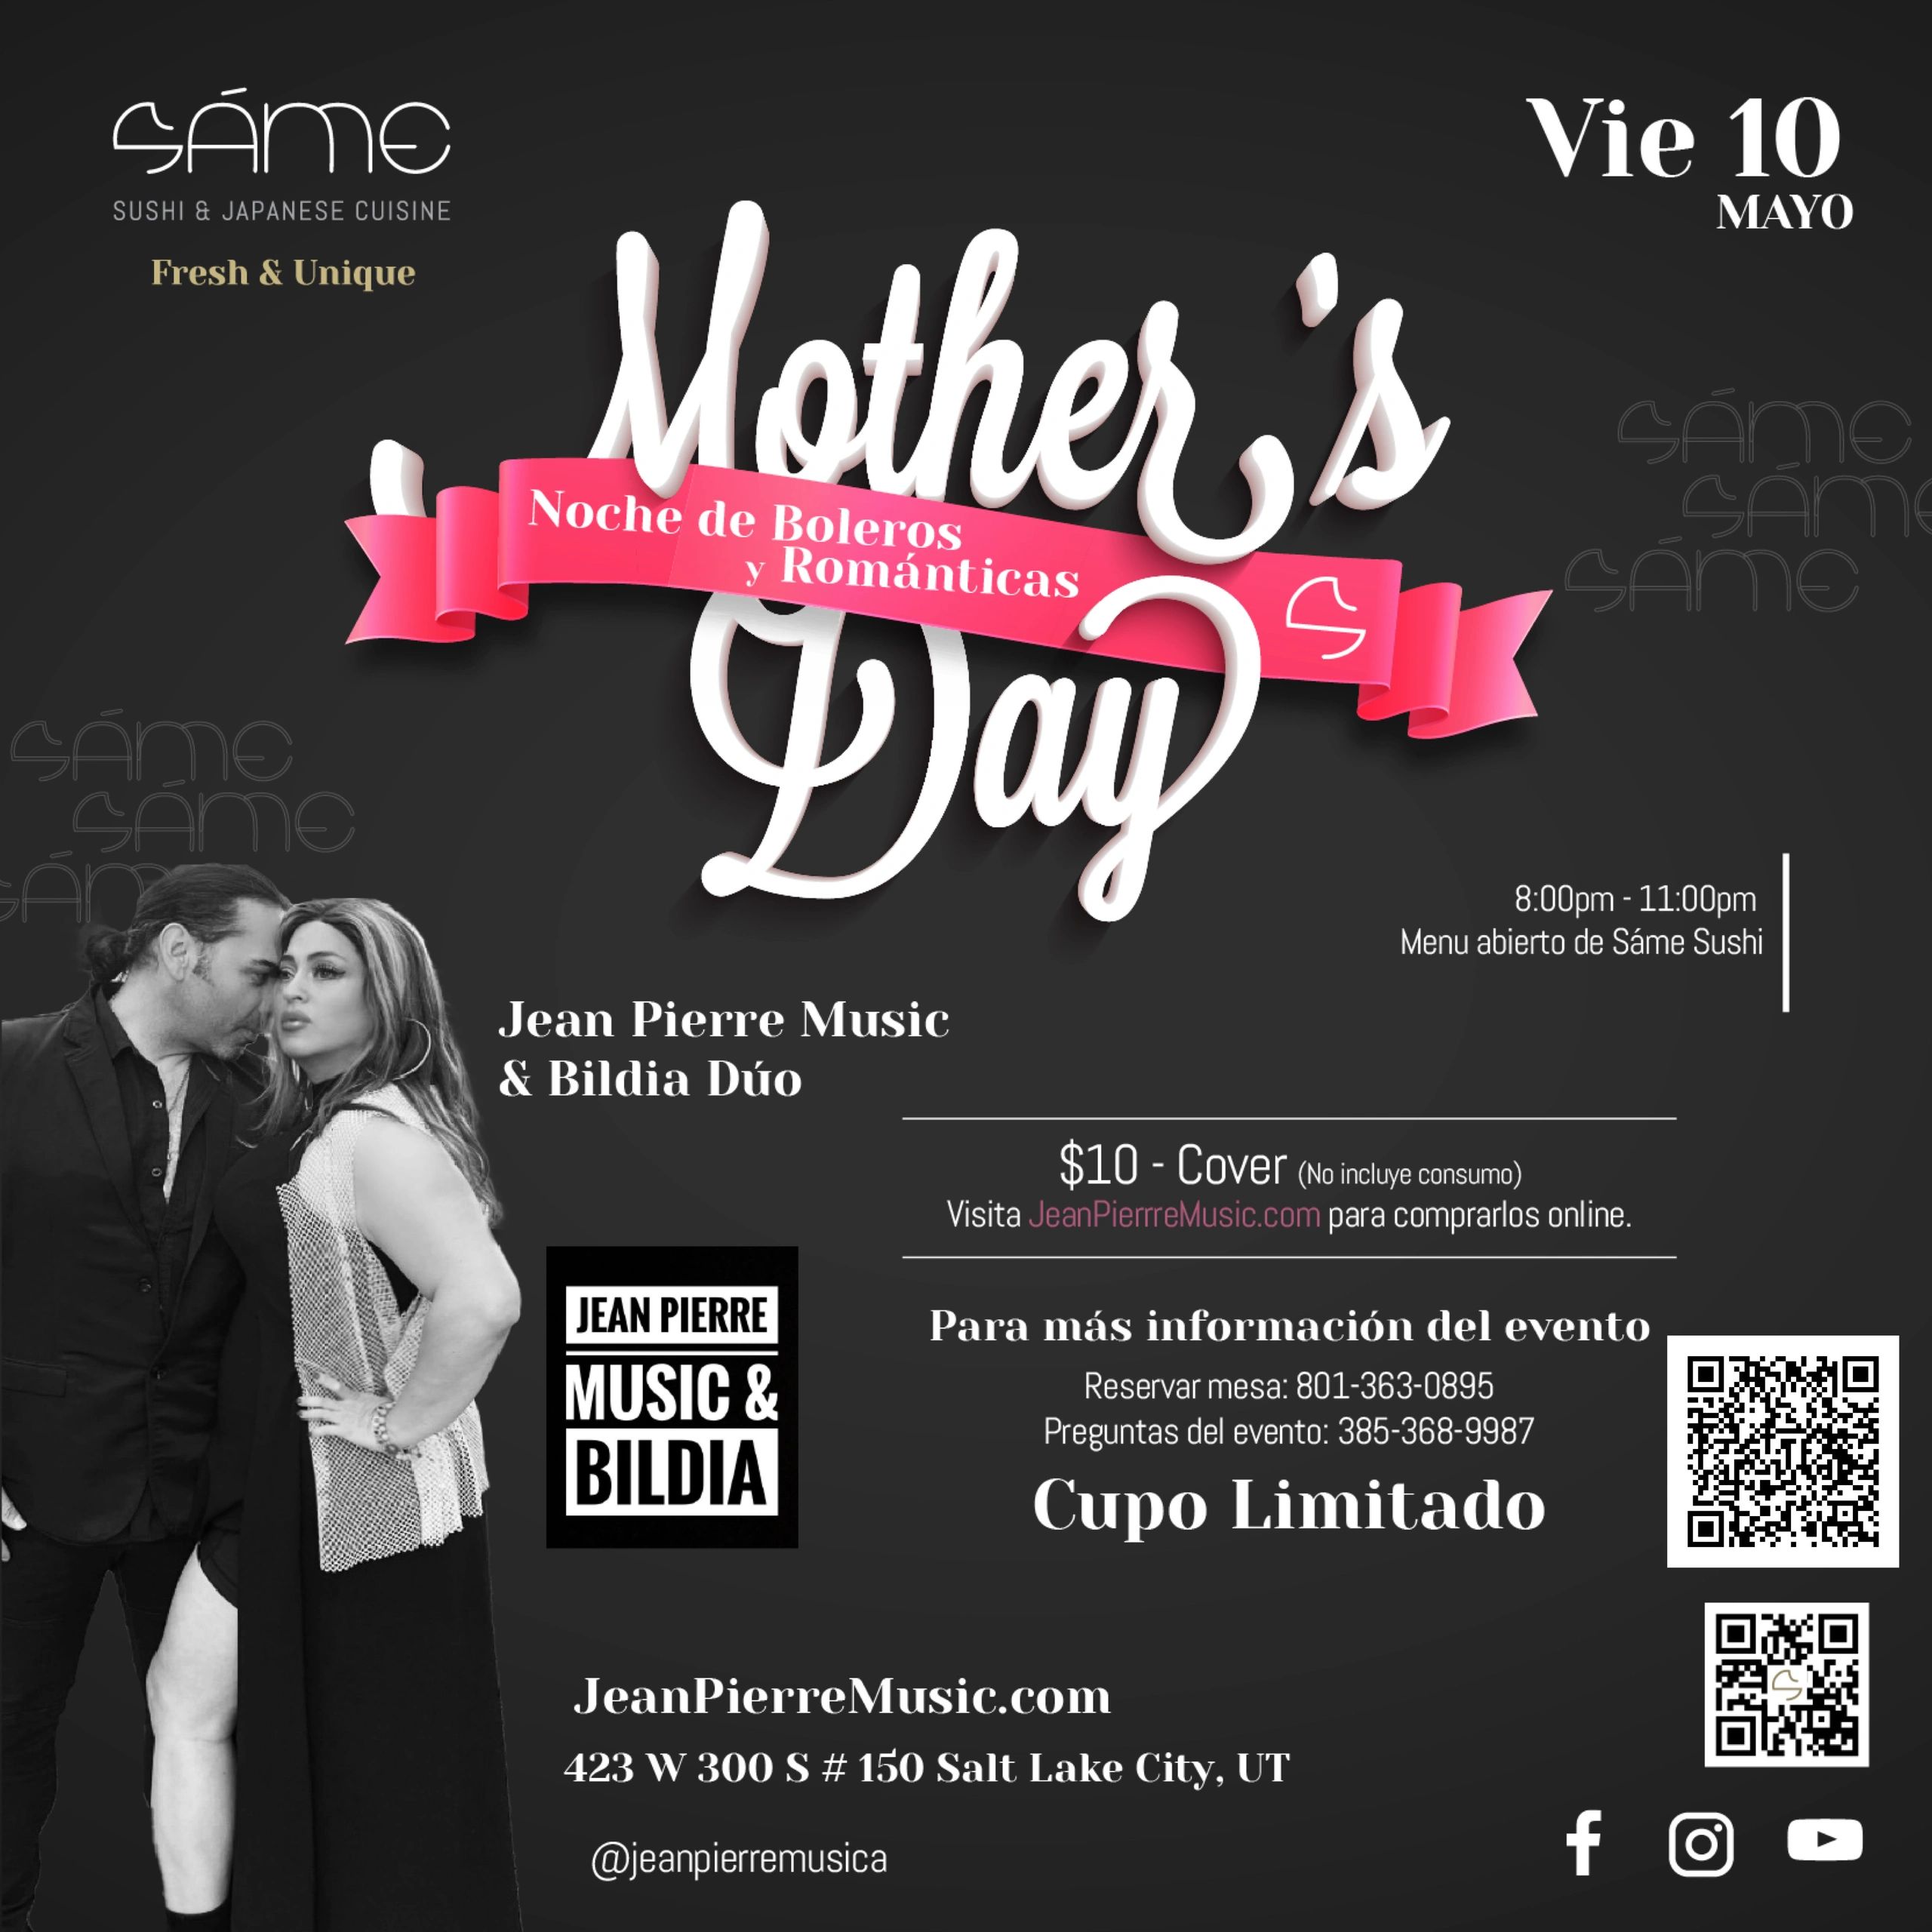 Jean Pierre & Bildia Noche de Boleros y Románticas Mother's Day
Friday May 10th
8-11pm